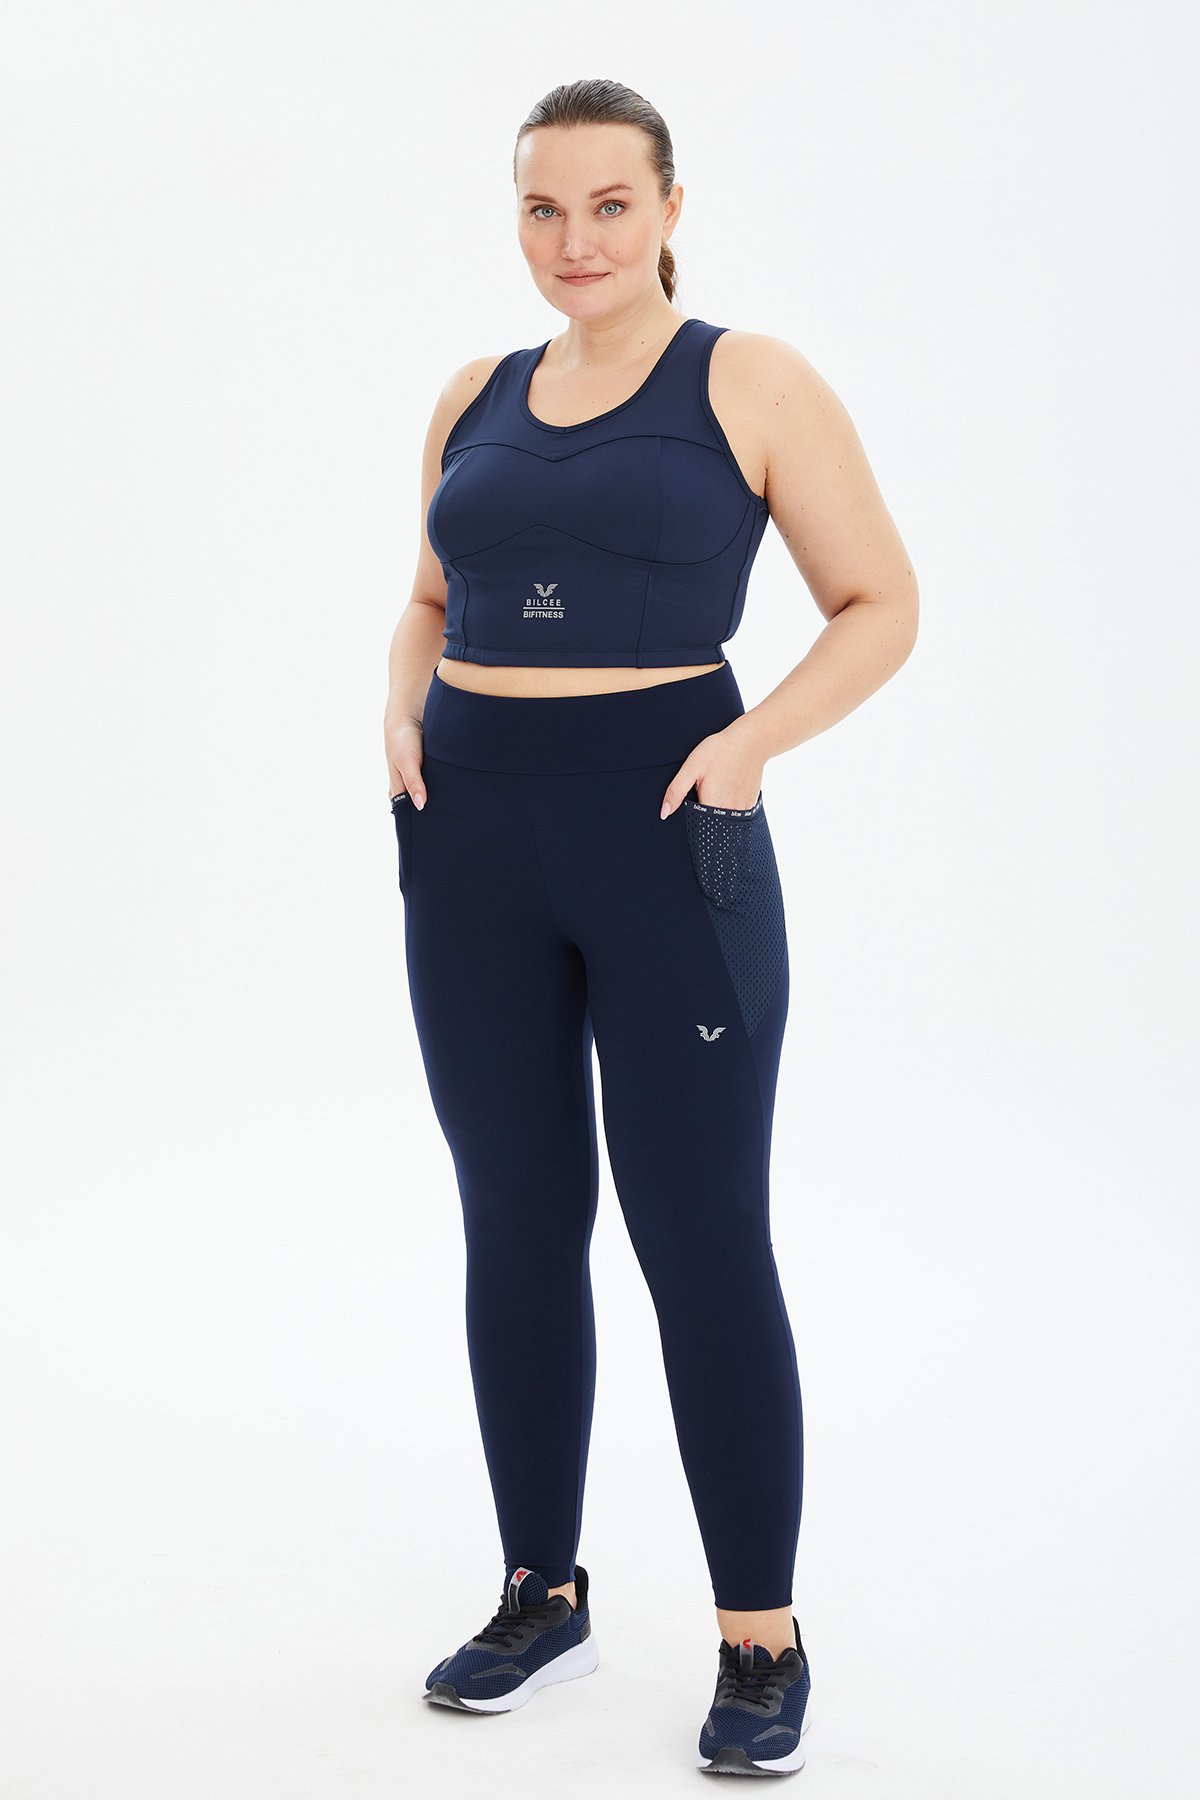 Kadın Lacivert Fitness-Antrenman Spor Fashion Crop Top Toparlayıcı Bra Sporcu Sütyeni Büstiyer 0604 - 7